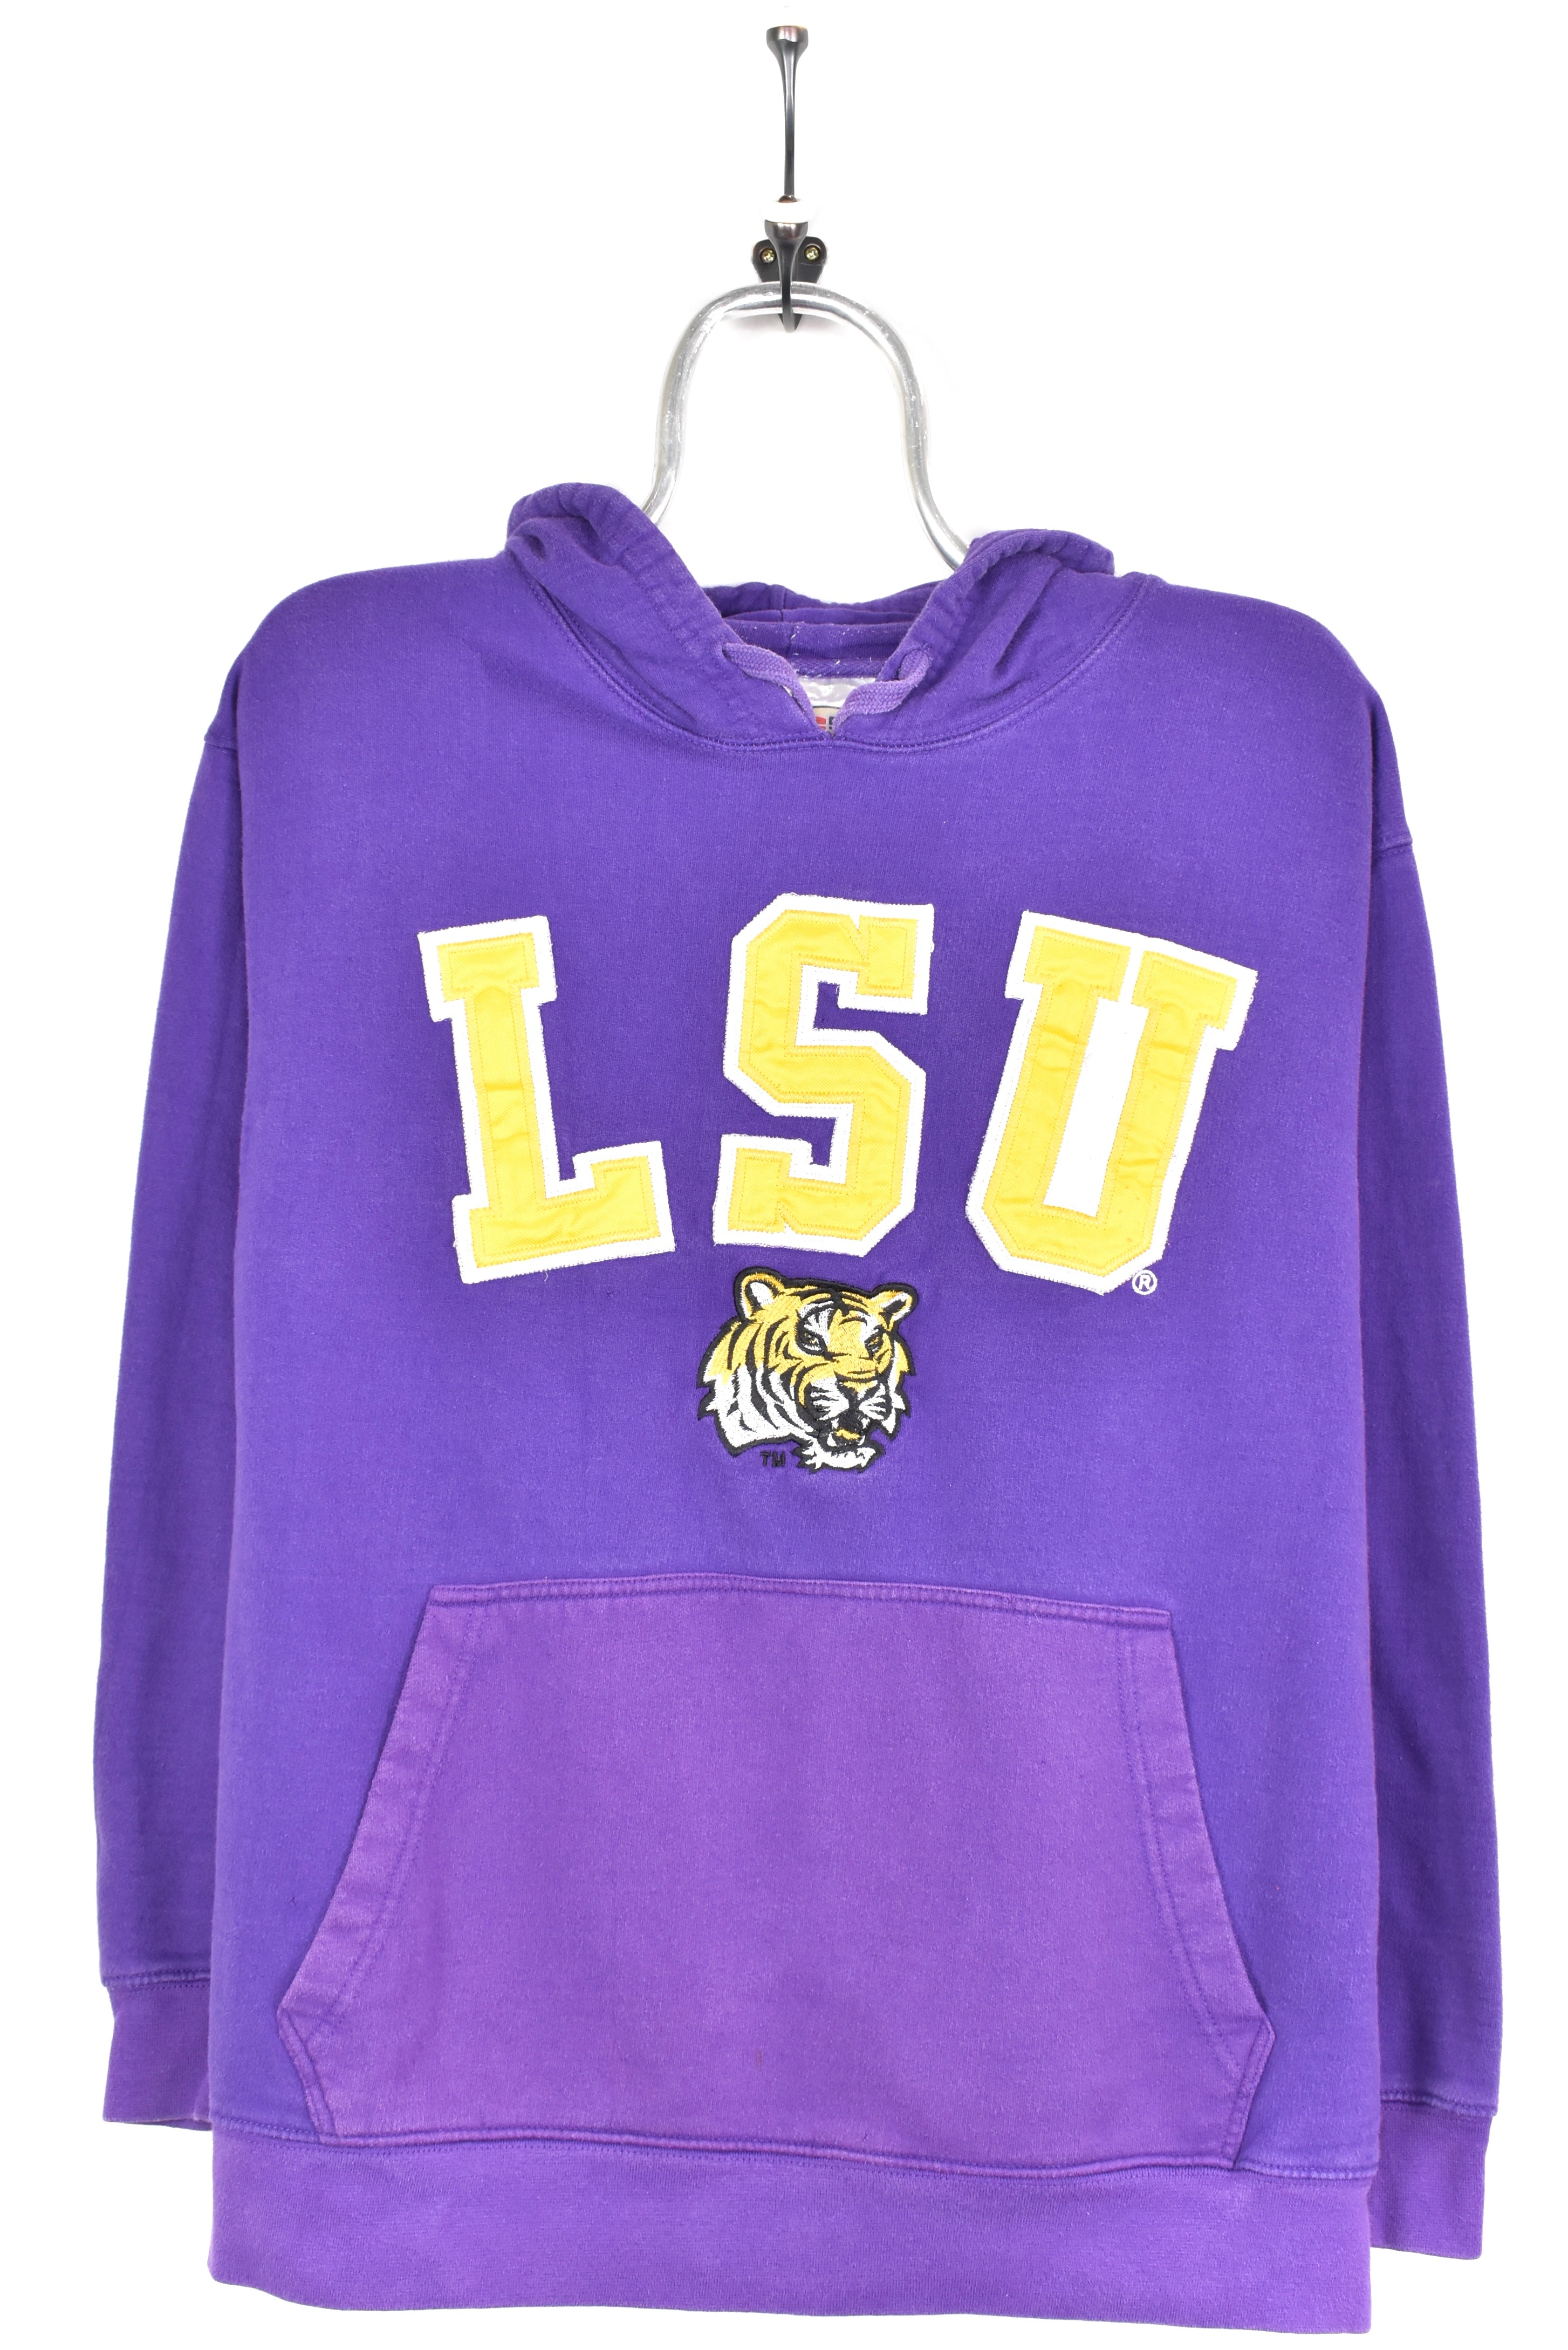 Vintage Louisiana State University hoodie, purple embroidered sweatshirt - AU Medium COLLEGE